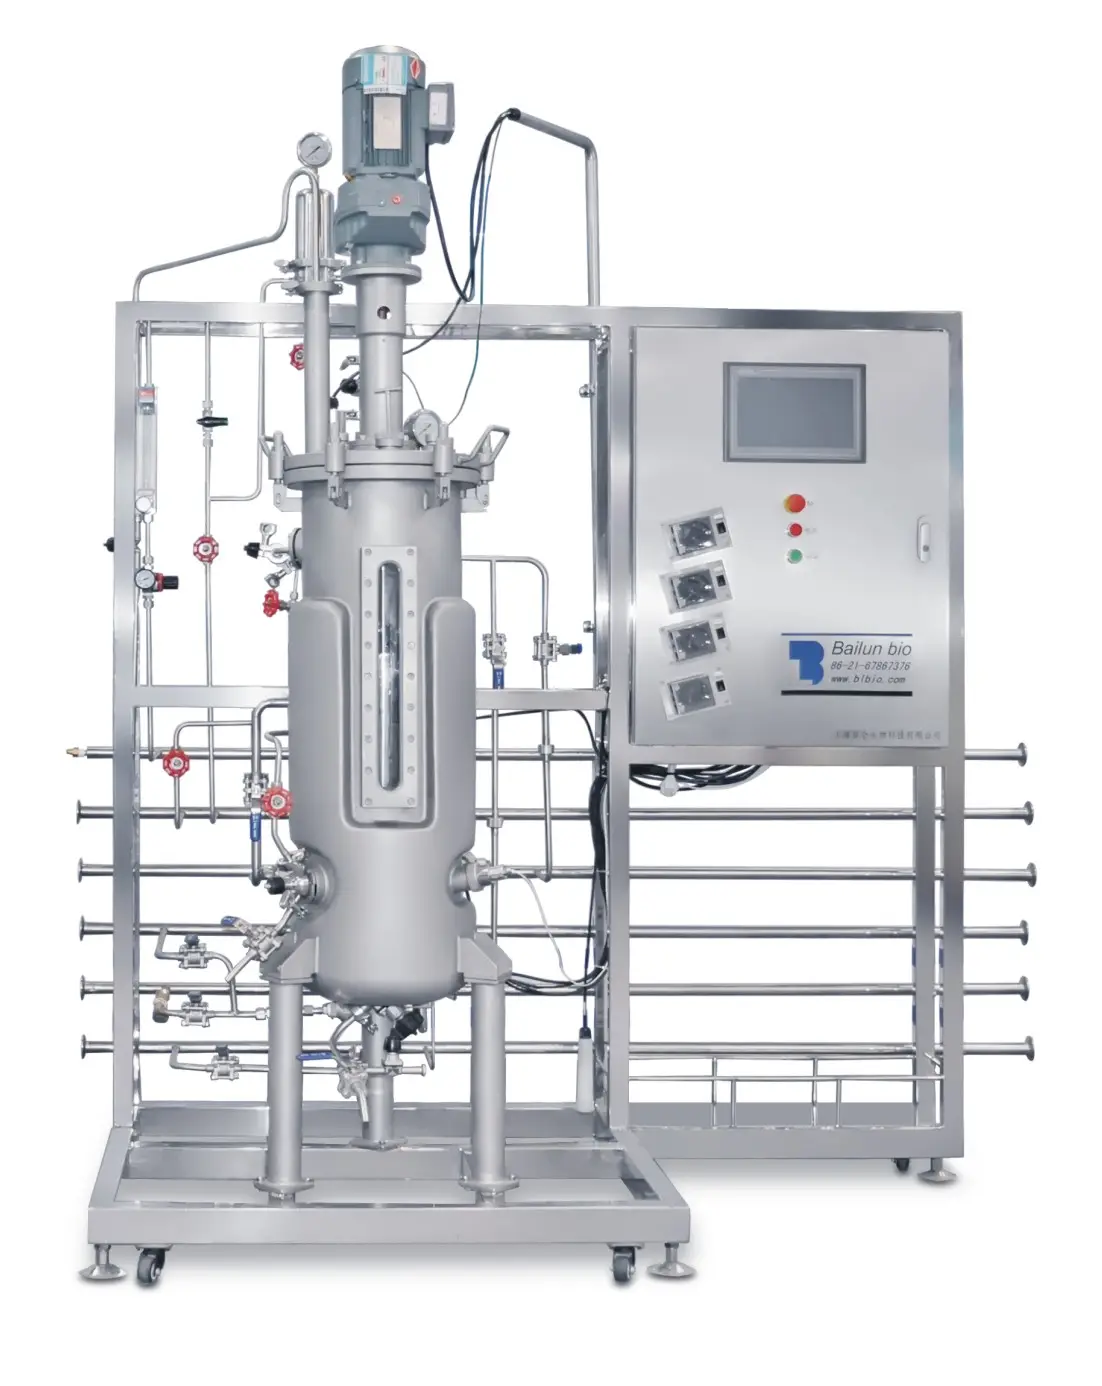 ถังหมักสำหรับถังหมัก Argos Celine bioreactor Flasks การออกแบบพื้นฐานของถังหมัก